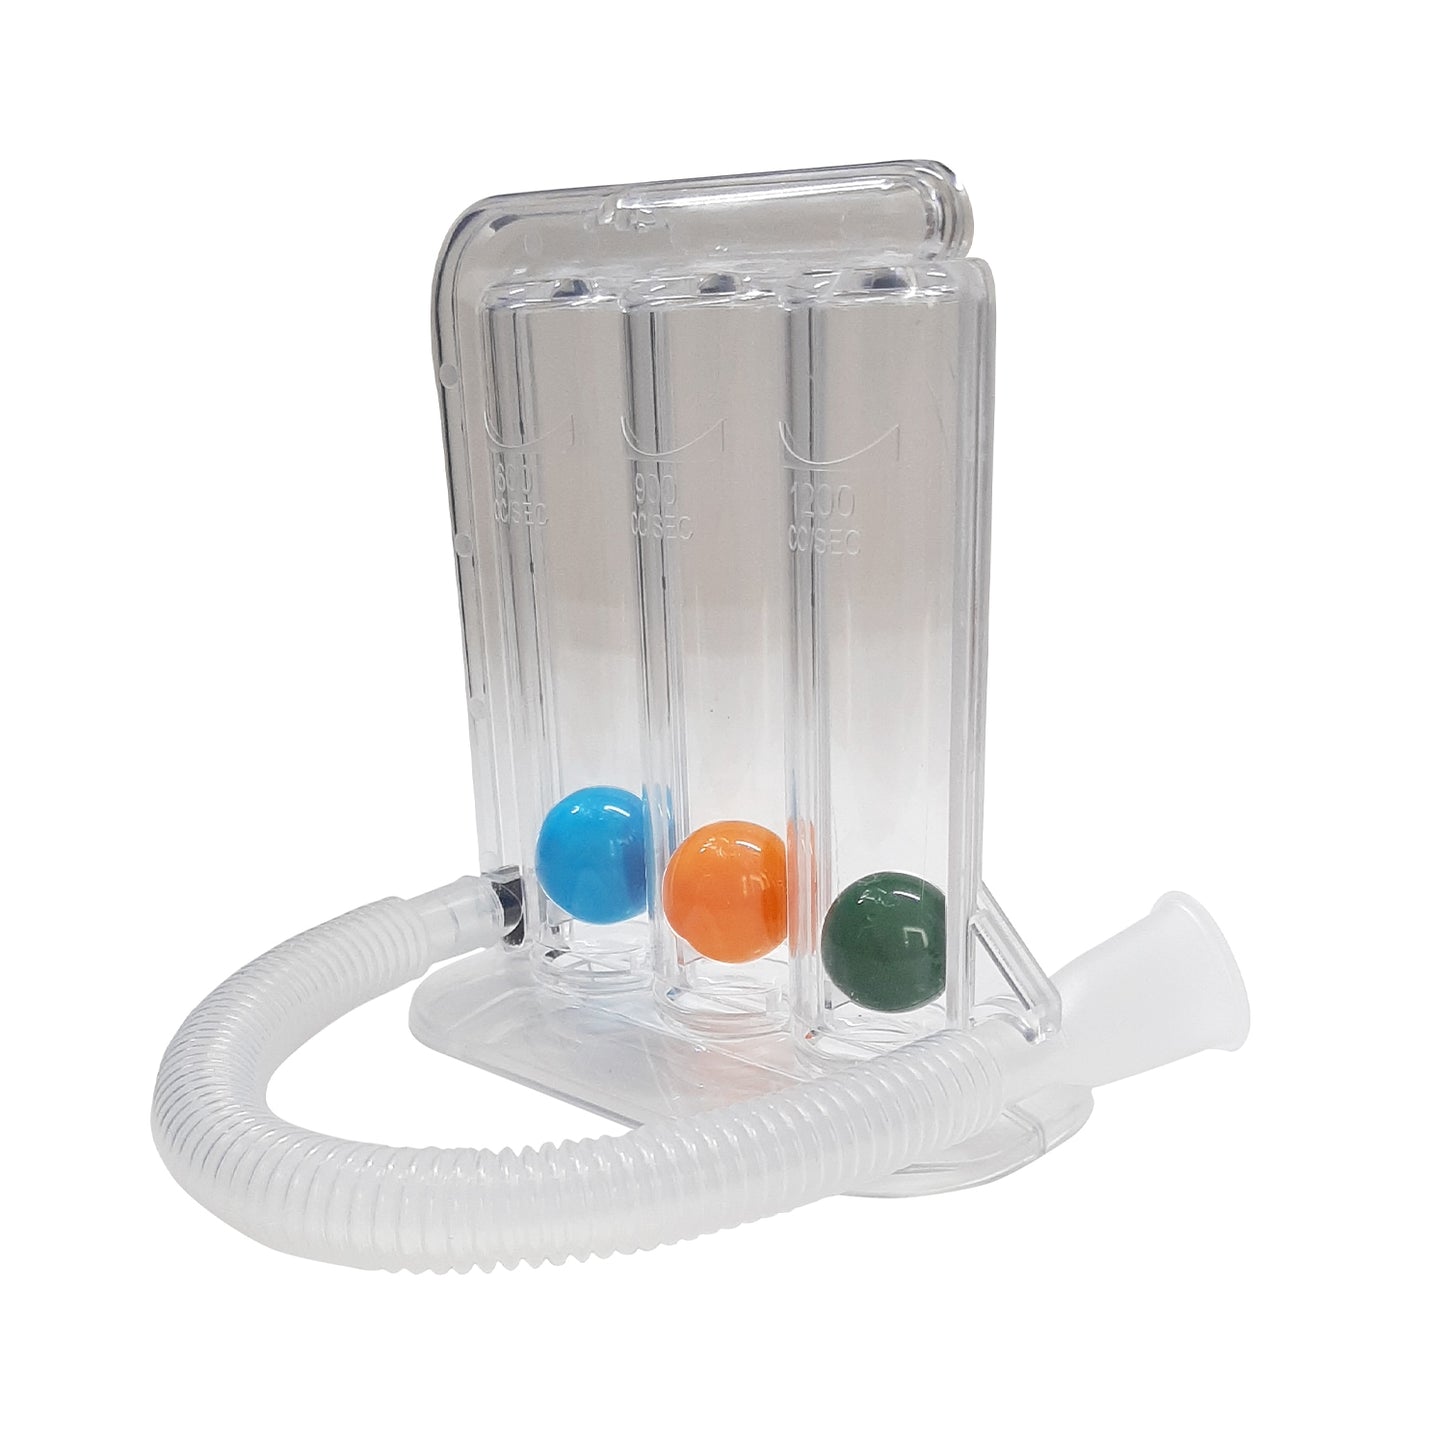 Inspirometro ejercitador incentivo respiratorio – JANOMEDICAL